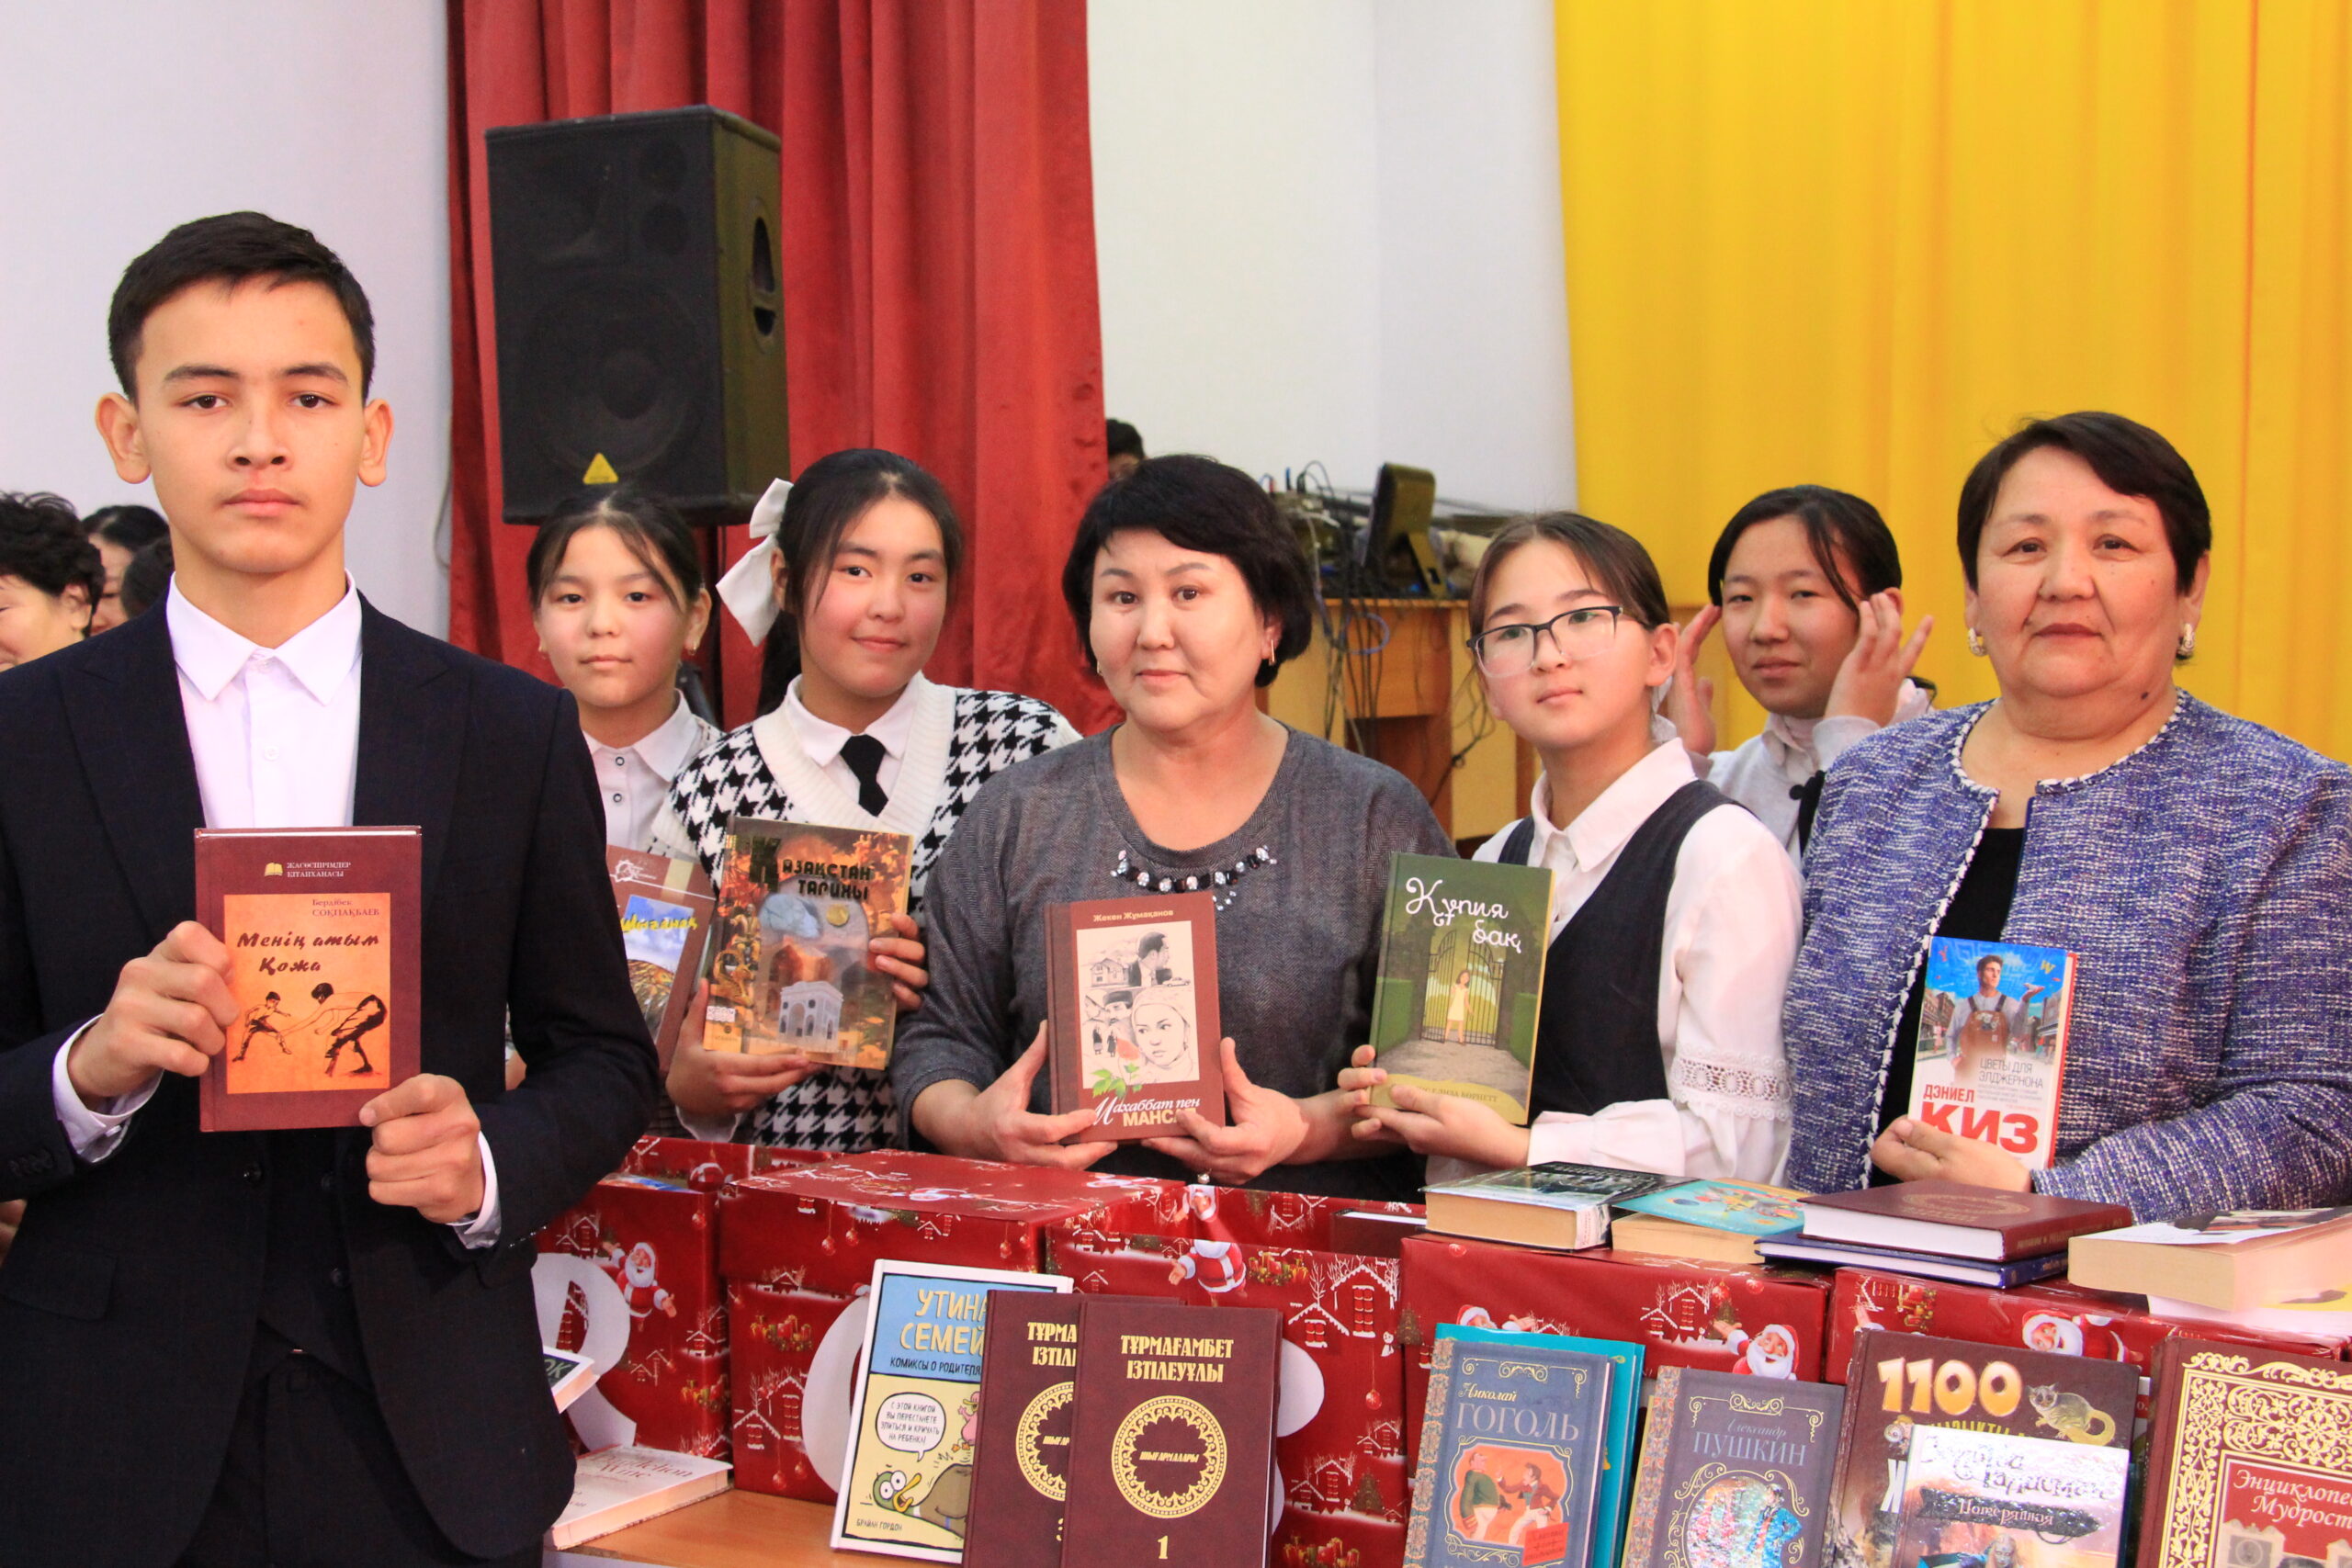 Подробнее о статье Bookcrossing: около 500 книг в подарок сельским школам